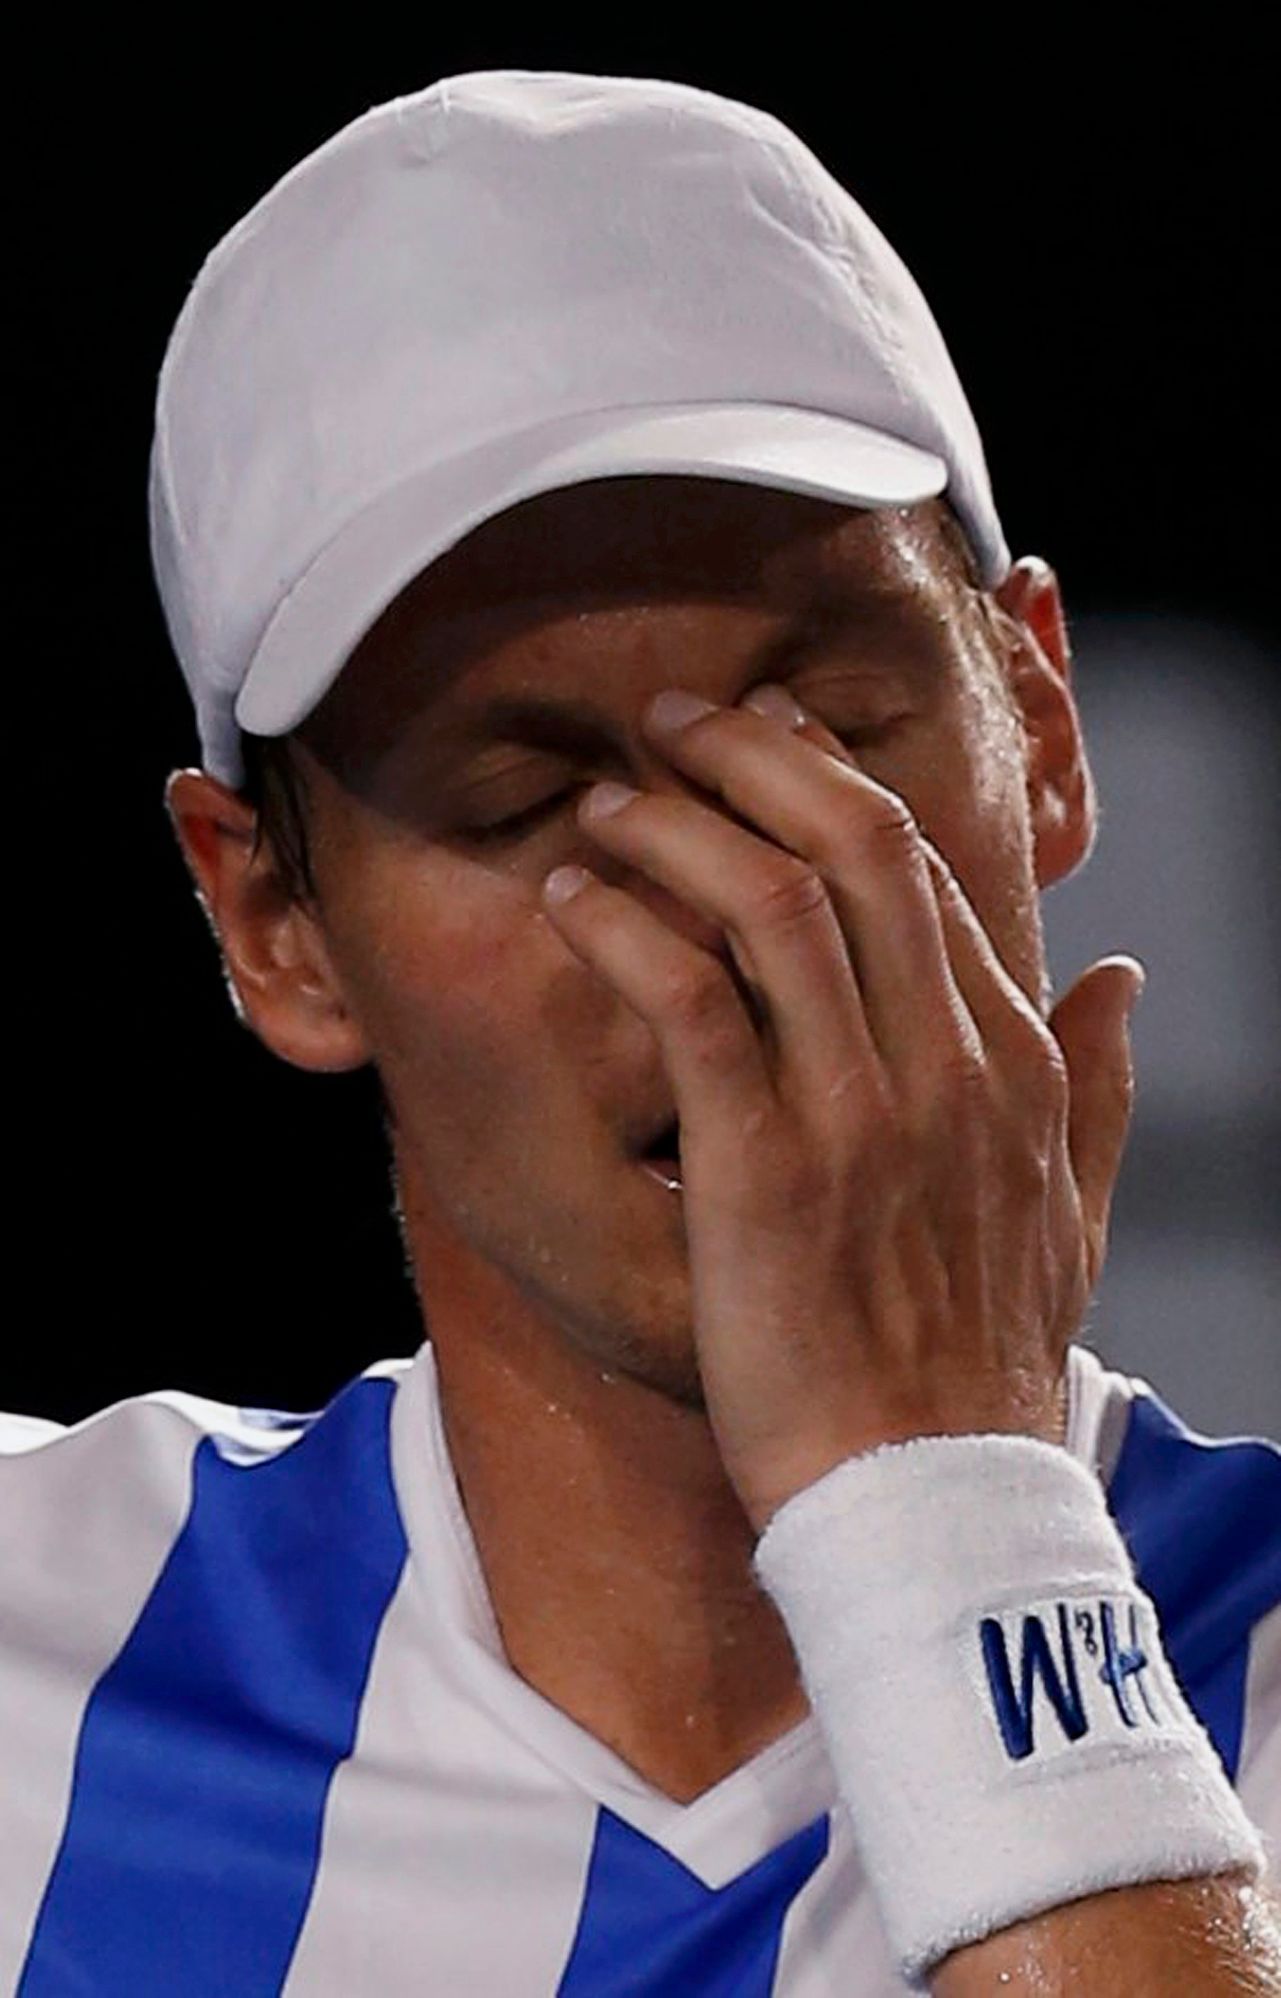 Tomáš Berdych smutní po prohraném semifinále Australian Open